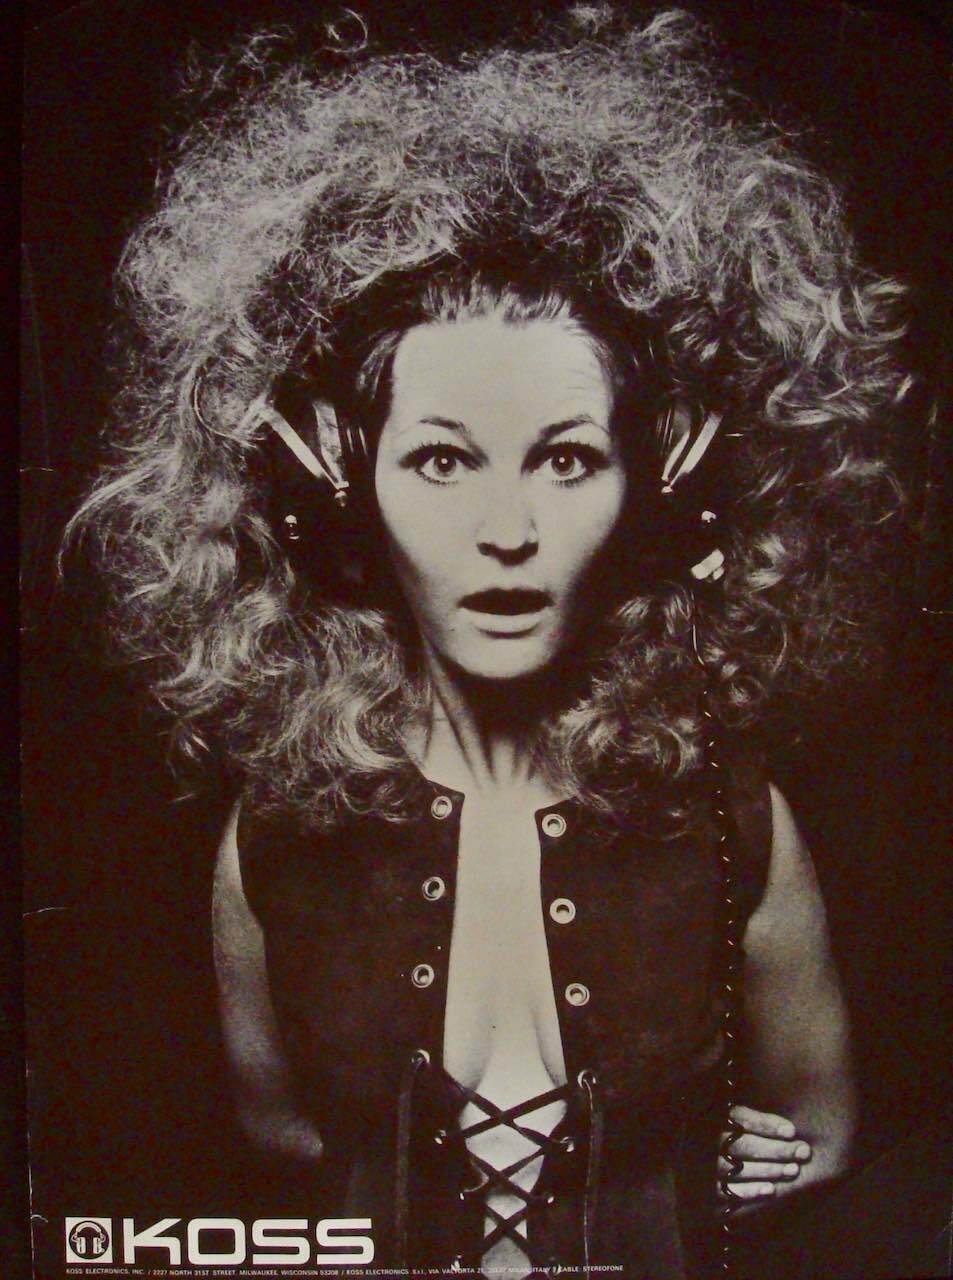 KOSS HEADPHONES Vintage 1969 PANDORA advertising poster 27x41